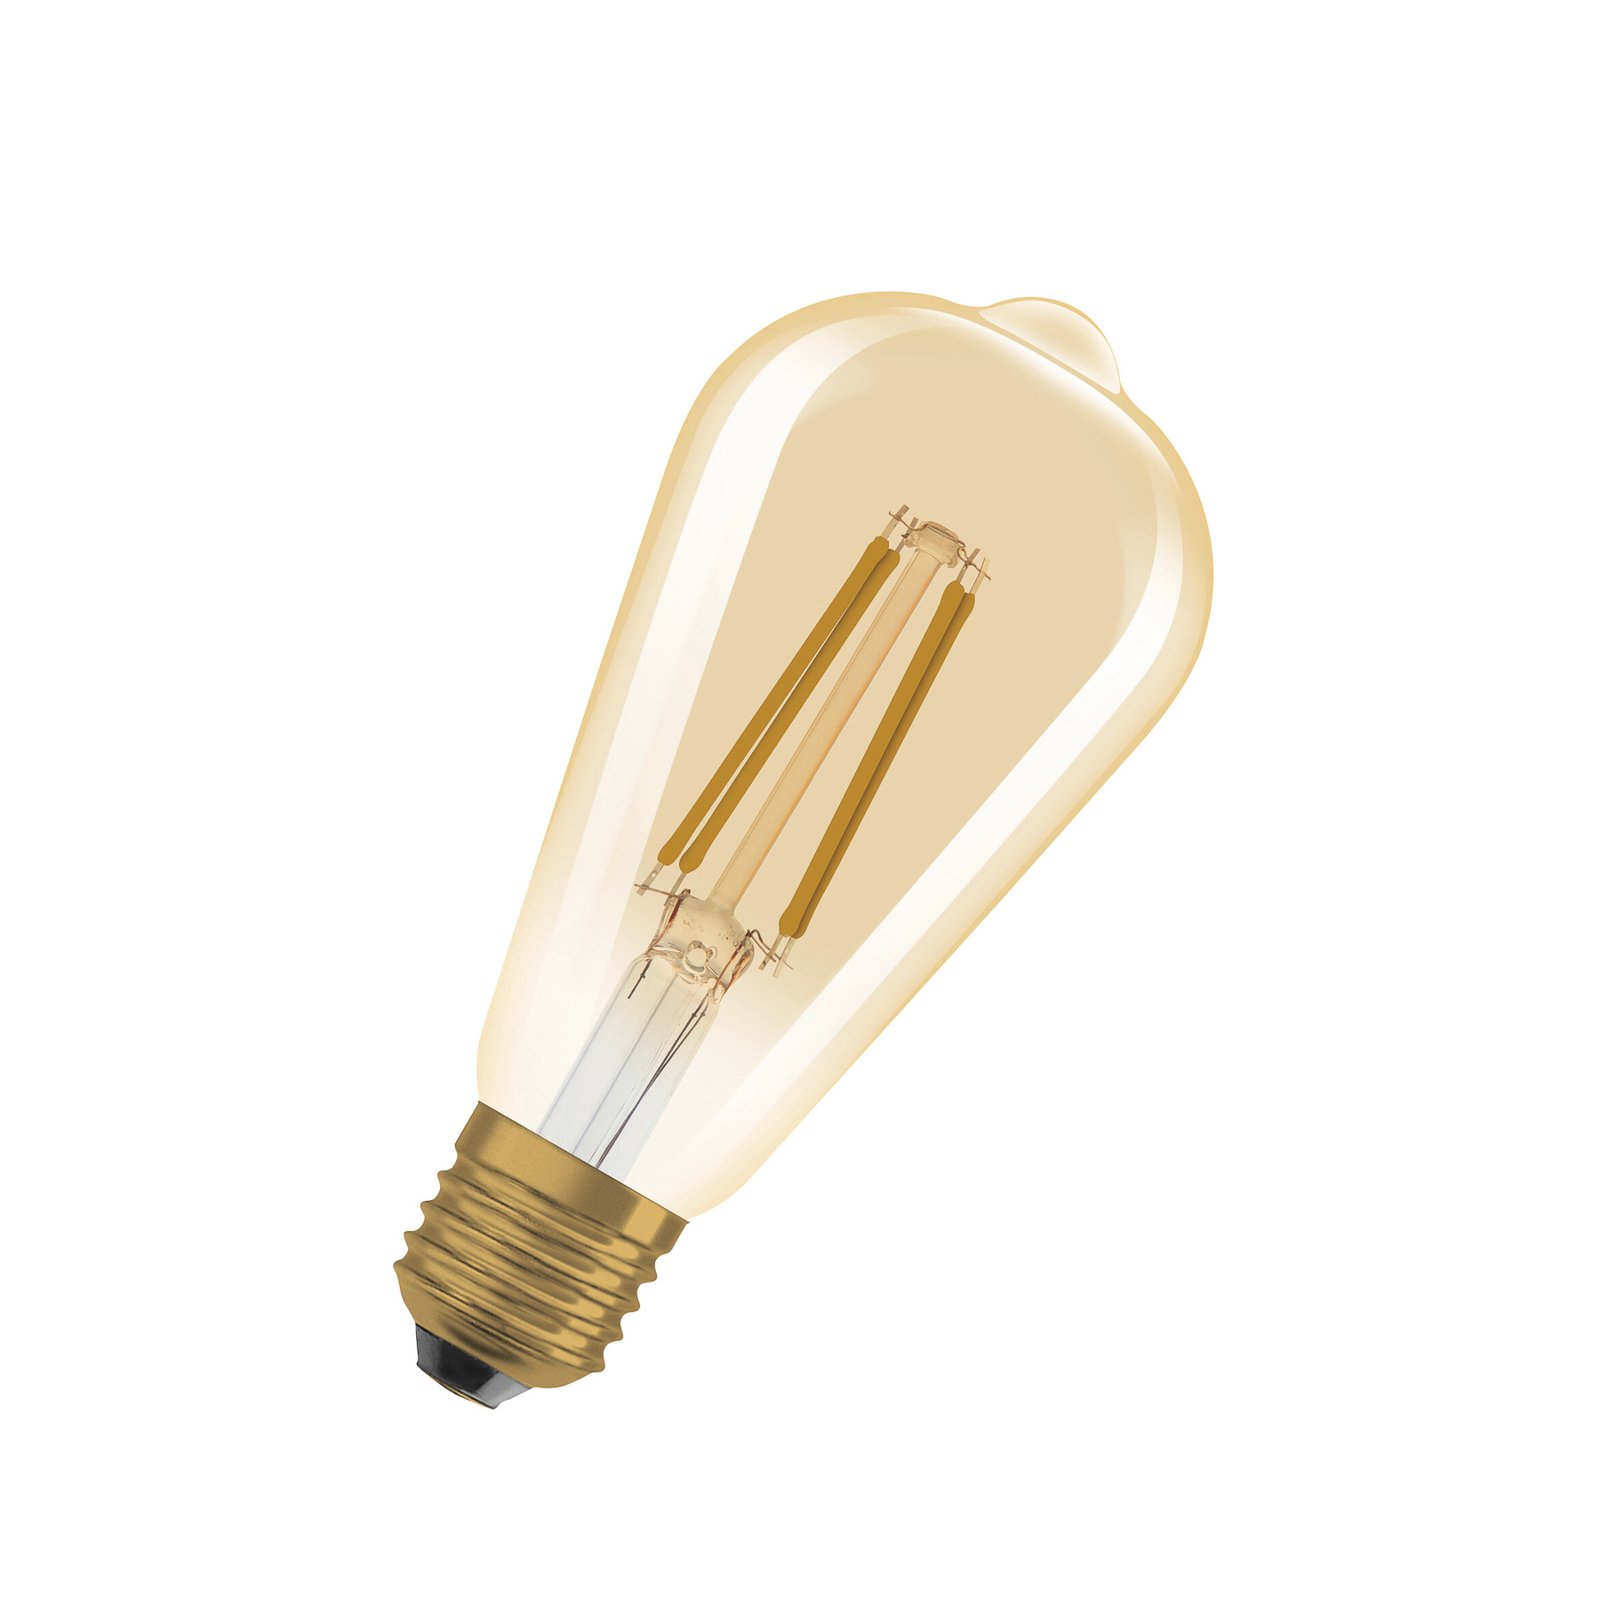 OSRAM LED Vintage 1906 Edison, złota, E27, 7,2 W, 824, ściemniana.